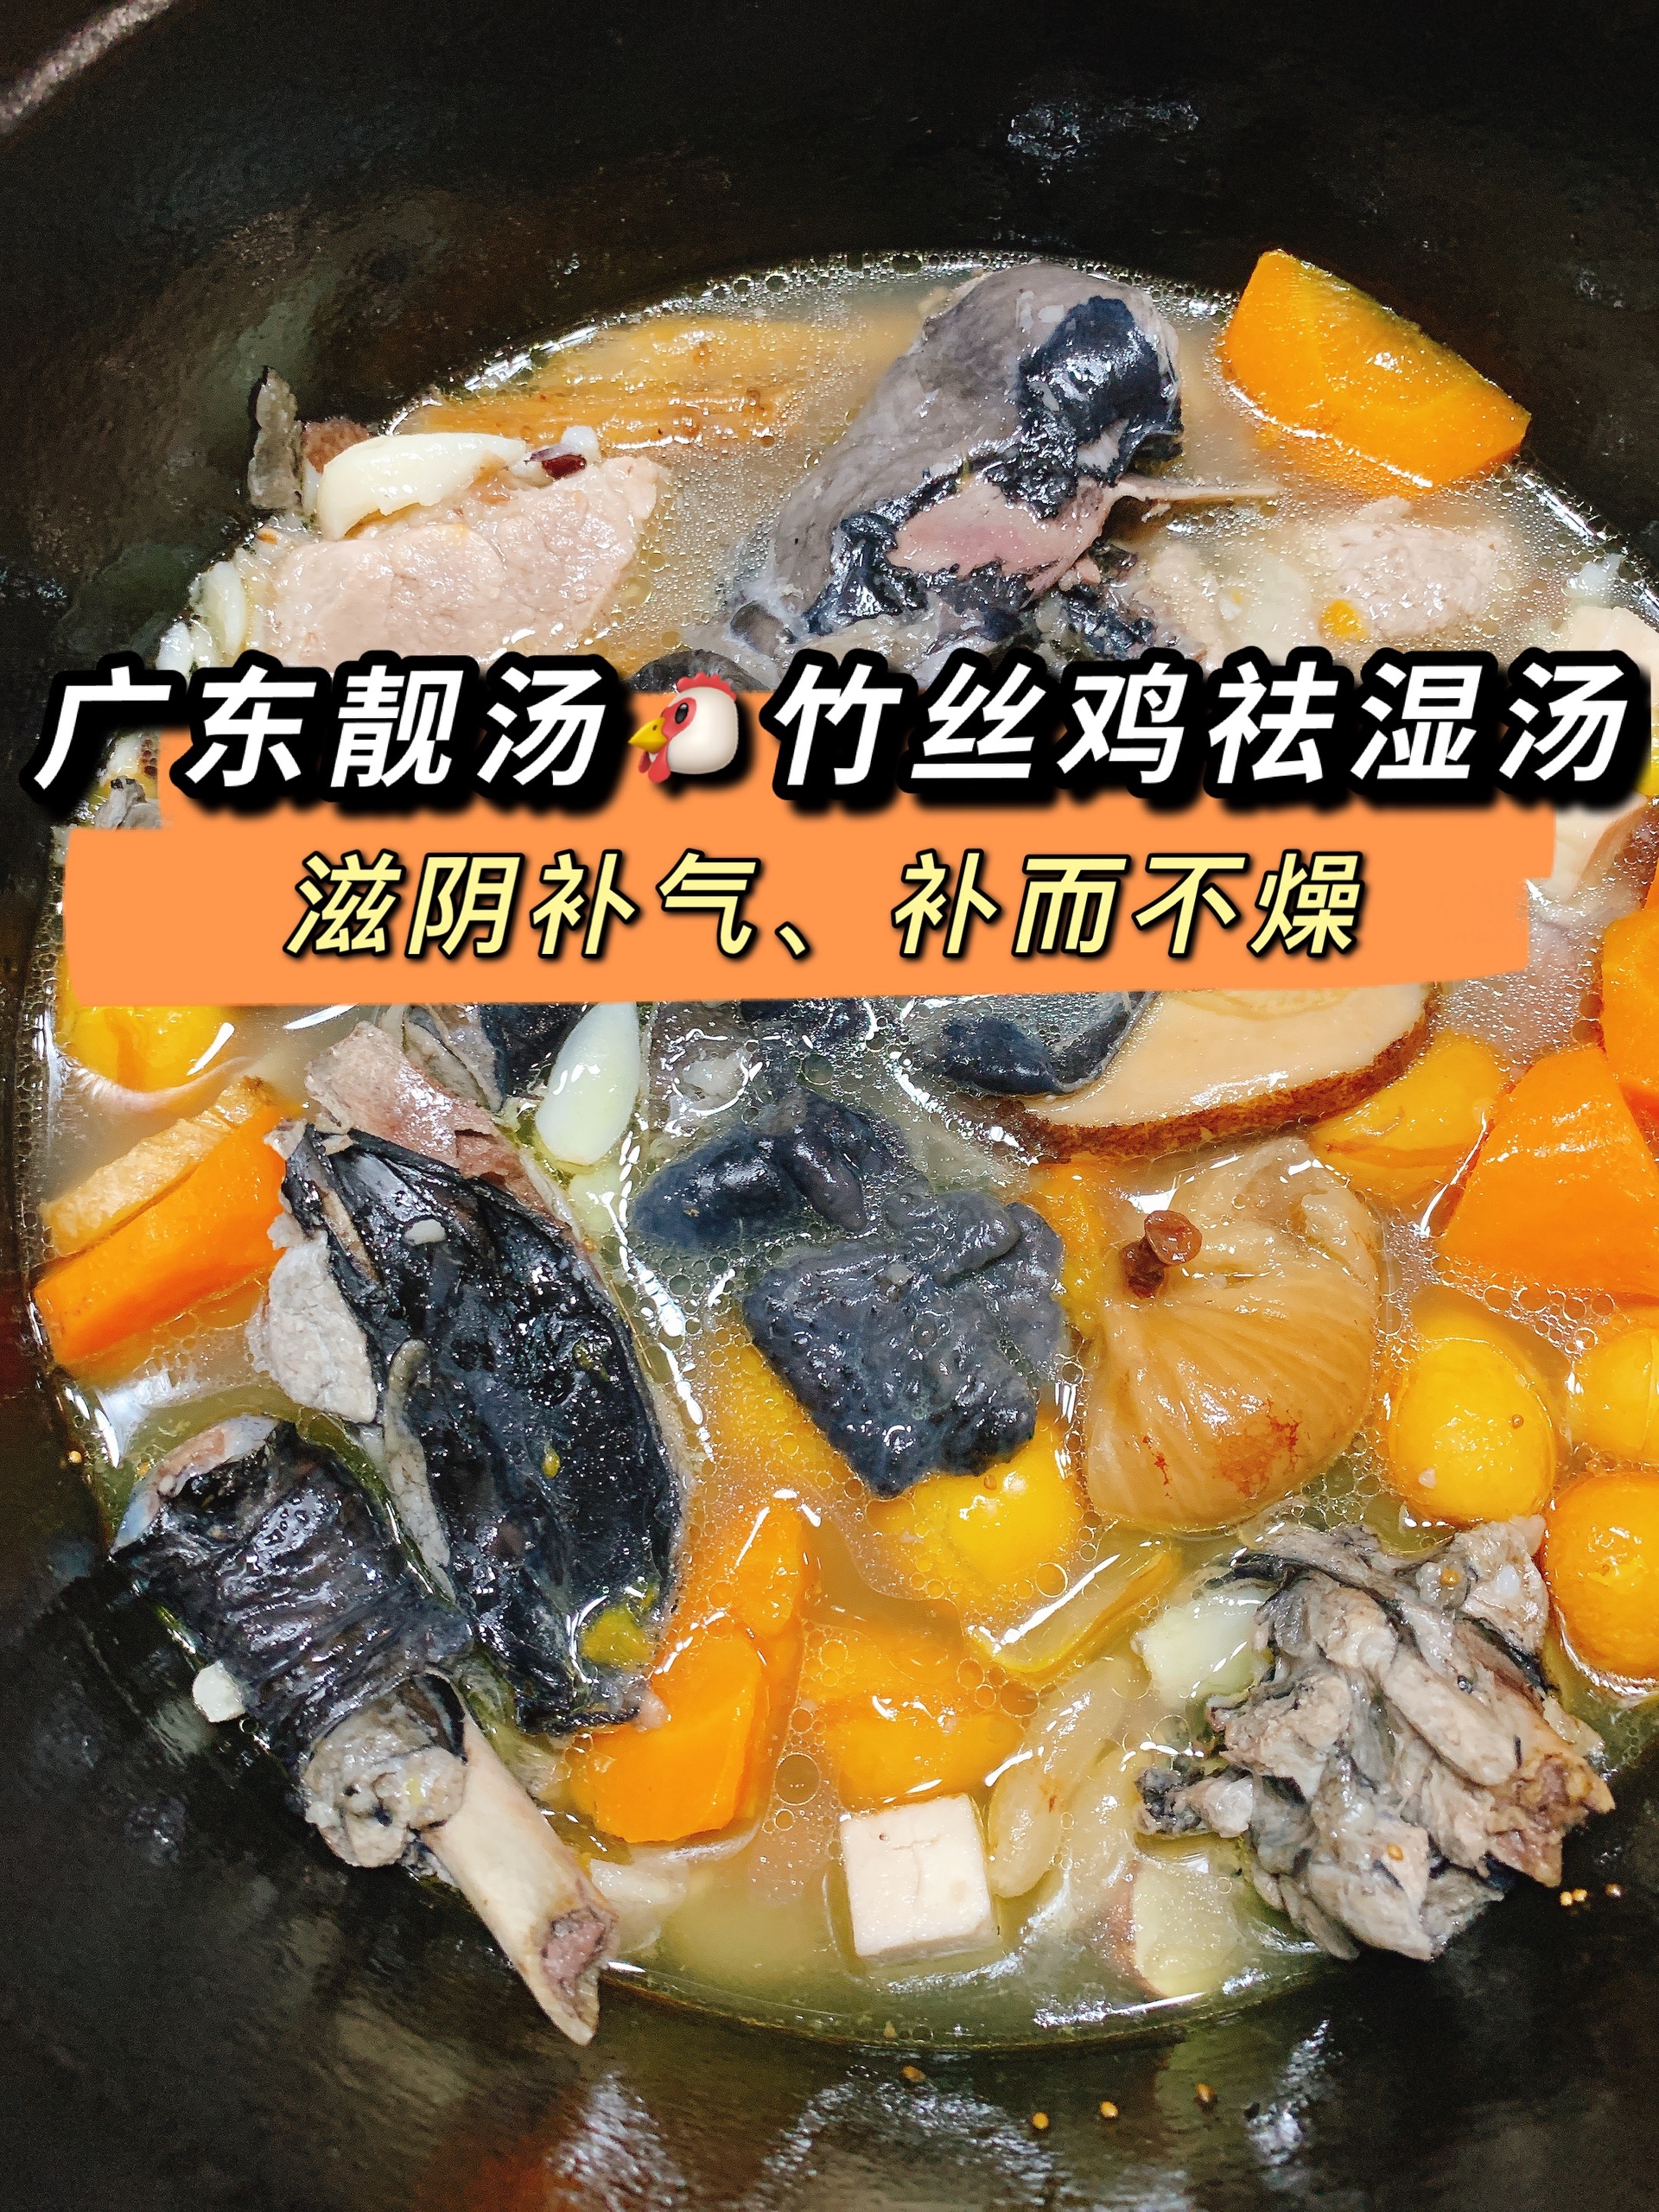 广东靓汤|竹丝鸡健脾祛湿汤的做法